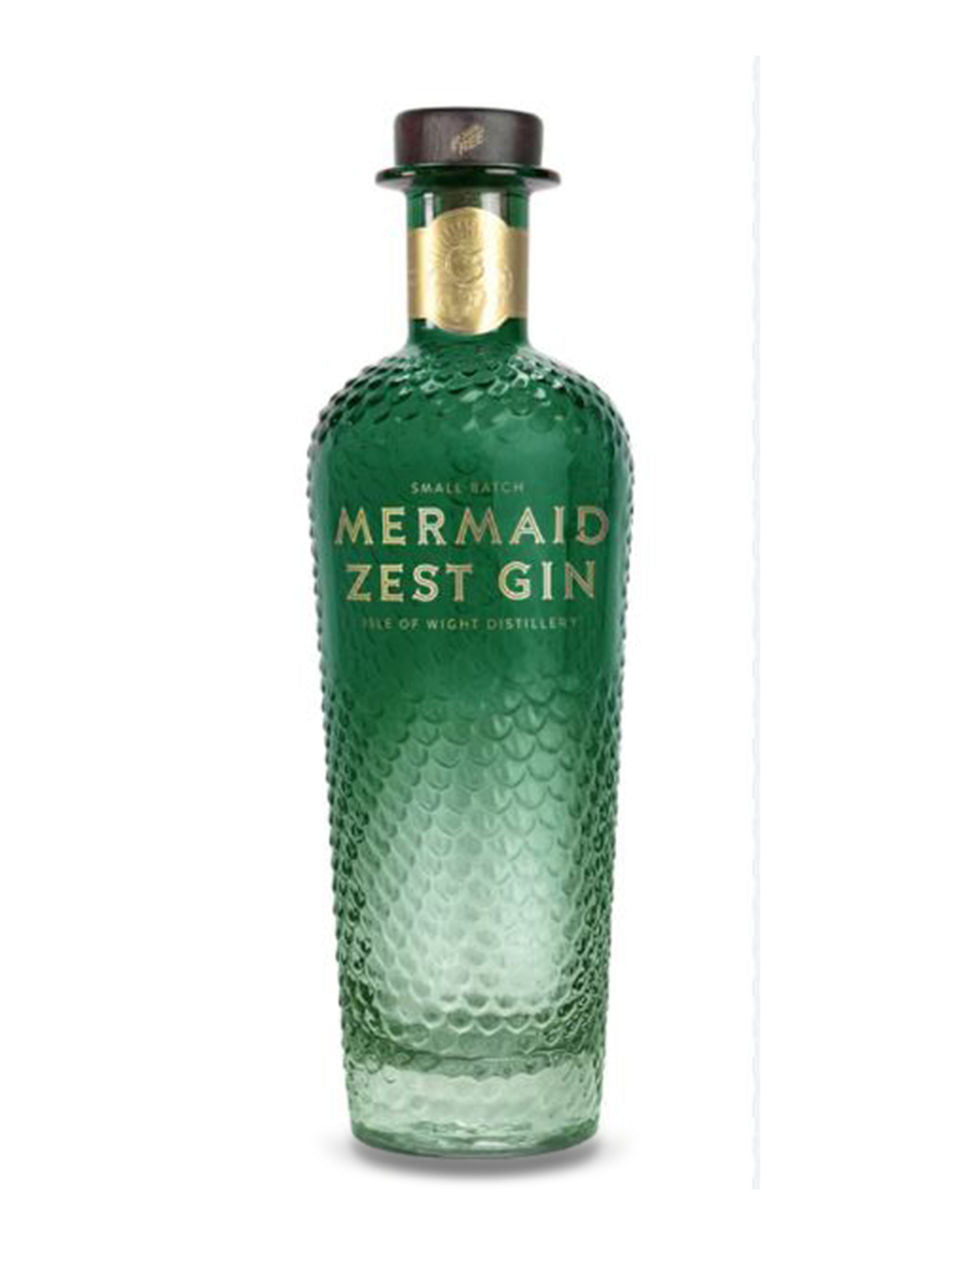 Mermaid Zest Gin 700 ml bottle